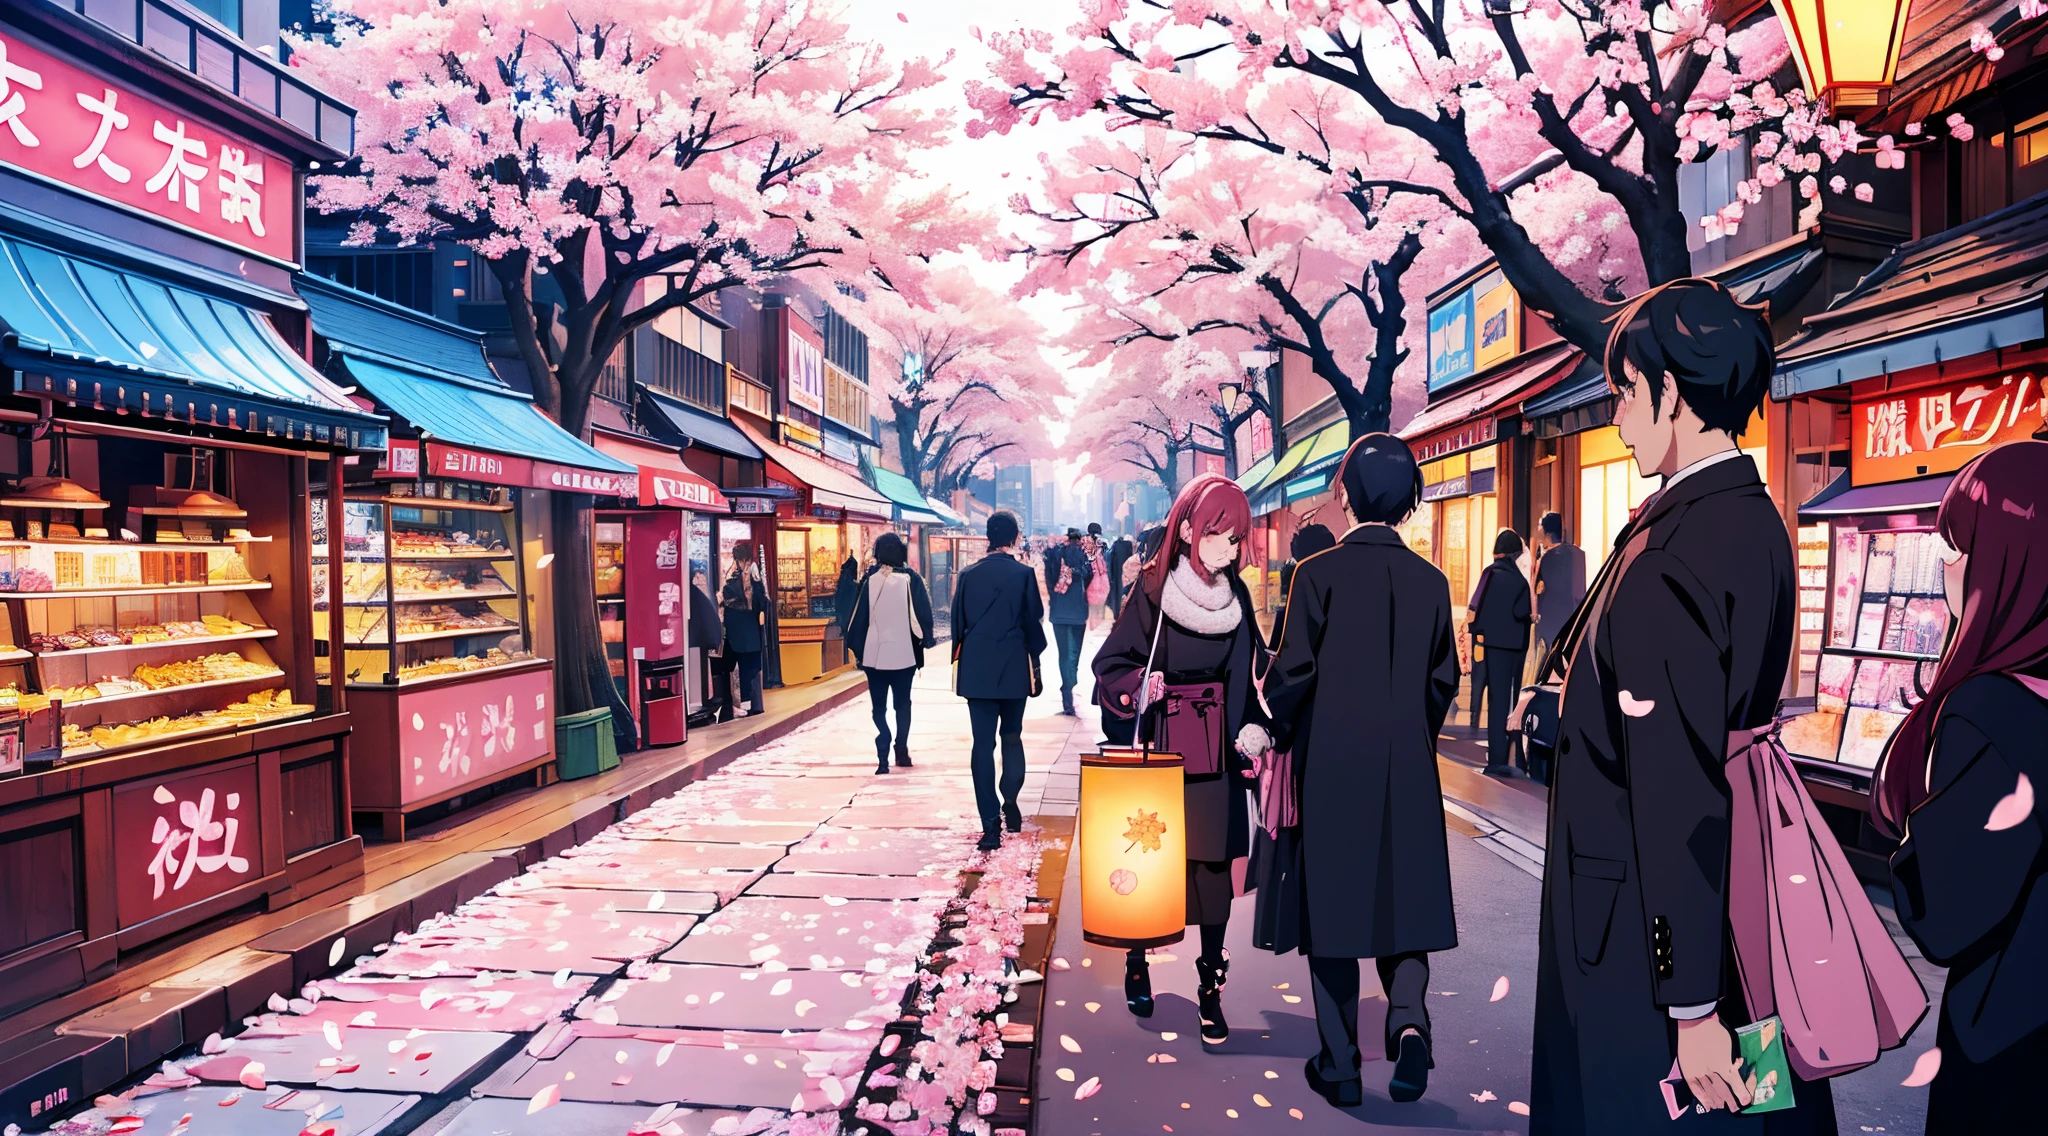 Les arbres Sakura fleurissent dans une ville moderne, couleurs vives, Rues bruyantes, lumières de la ville, pétales de fleurs de cerisier, flottant dans les airs, Horizon de la capitale, foule de gens,  architecture, ambiance romantique, paysage urbain au crépuscule, Les pétales de Sakura tombent, comme des confettis, gratte-ciel modernes, rue, doublé de sakura, enseignes lumineuses au néon,  vie, Les pétales de Sakura couvrent les trottoirs, Combinaison d&#39;éléments traditionnels et modernes, Intersections achalandées, arbres sakura, éclairé par des lampadaires, ambiance énergique, Fête des cerisiers en fleurs au centre-ville, Vibrant nightvie, combinaison harmonieuse de nature et de ville, Pétales de Sakura flottant au vent,  une oasis, décoré de fleurs de cerisier, ambiance cosmopolite, vendeurs de rue vendant des produits sur le thème de Sakura.